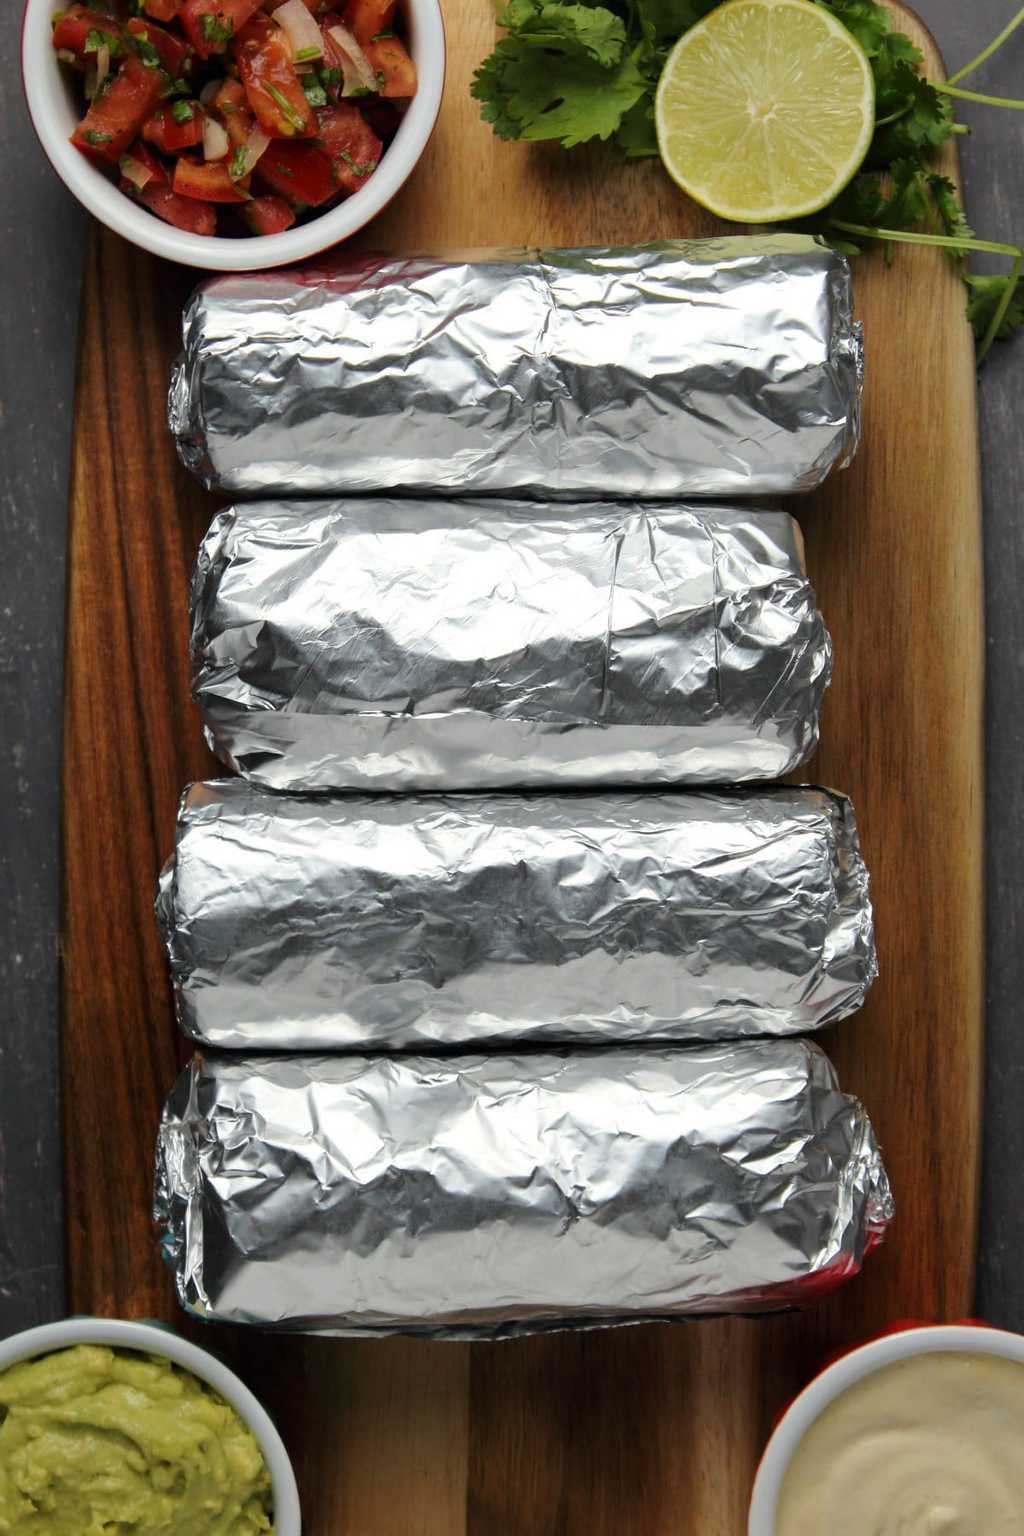 Vegan burritos wrapped in foil. 